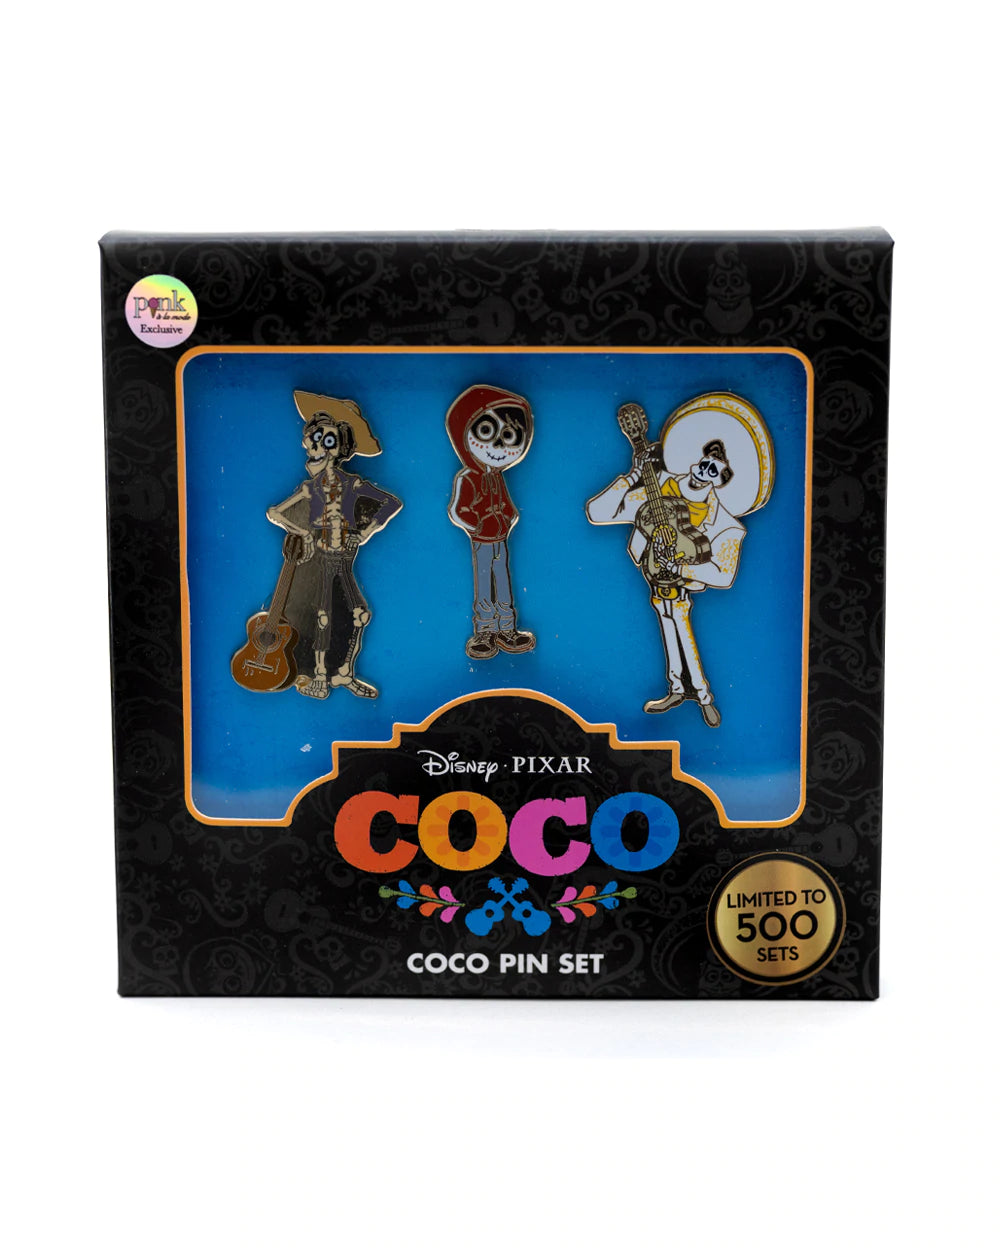 Disney Pixar Coco 3 Piece Limited Edition Enamel Pin Set